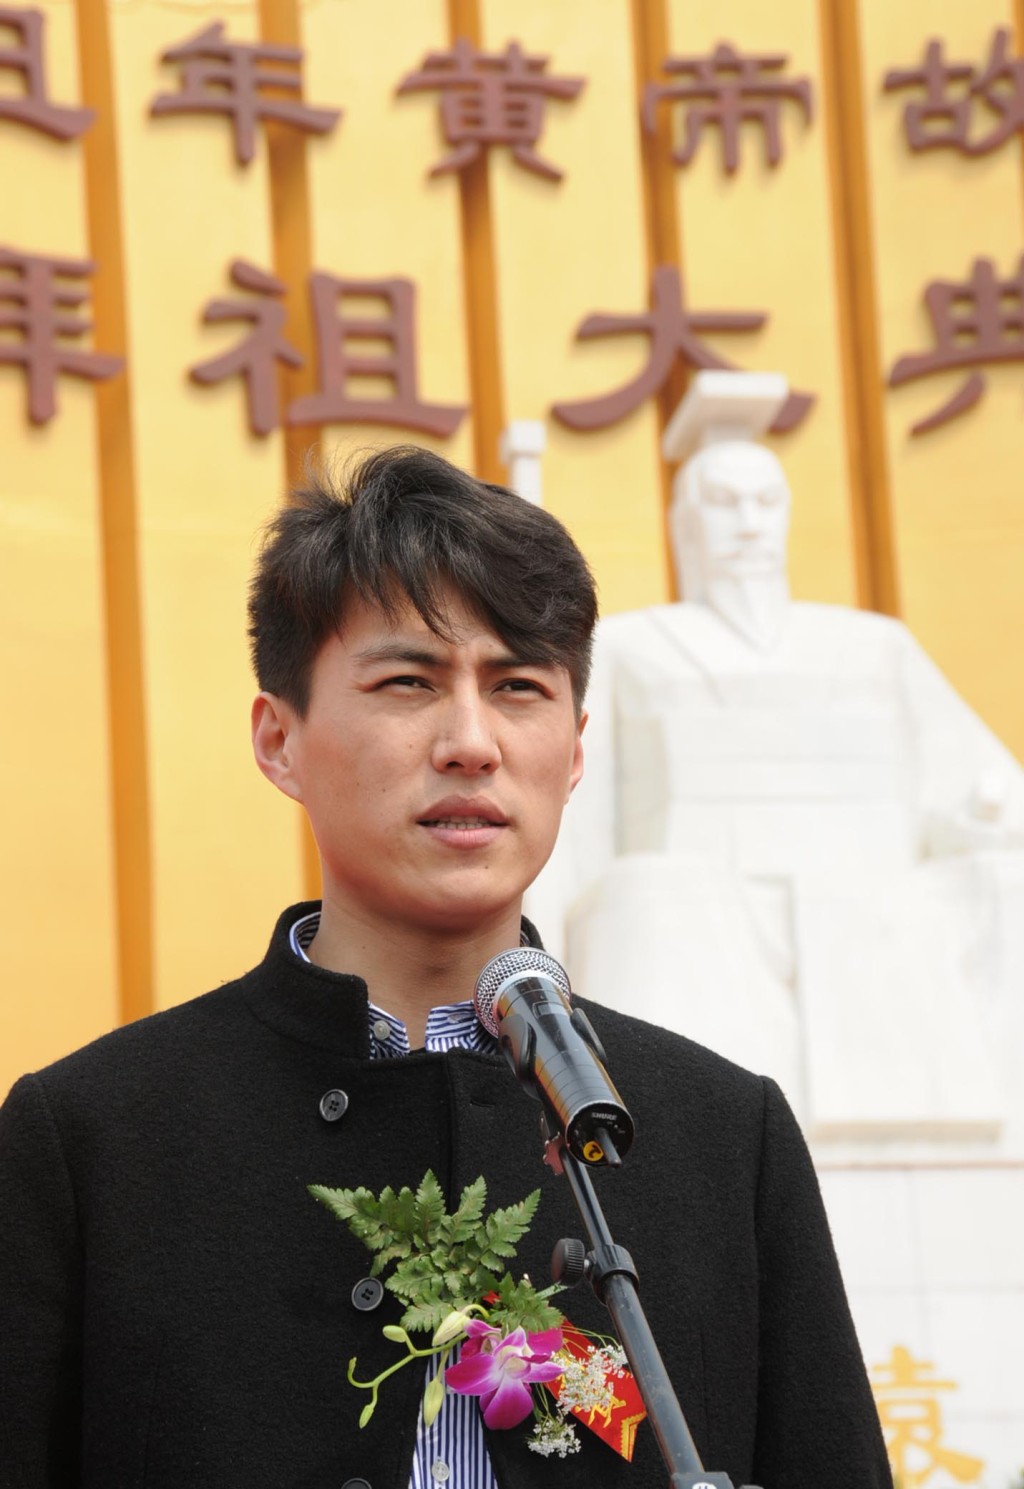 靳東曾在大型史詩電影《黃帝》中出演黃帝。 中新社